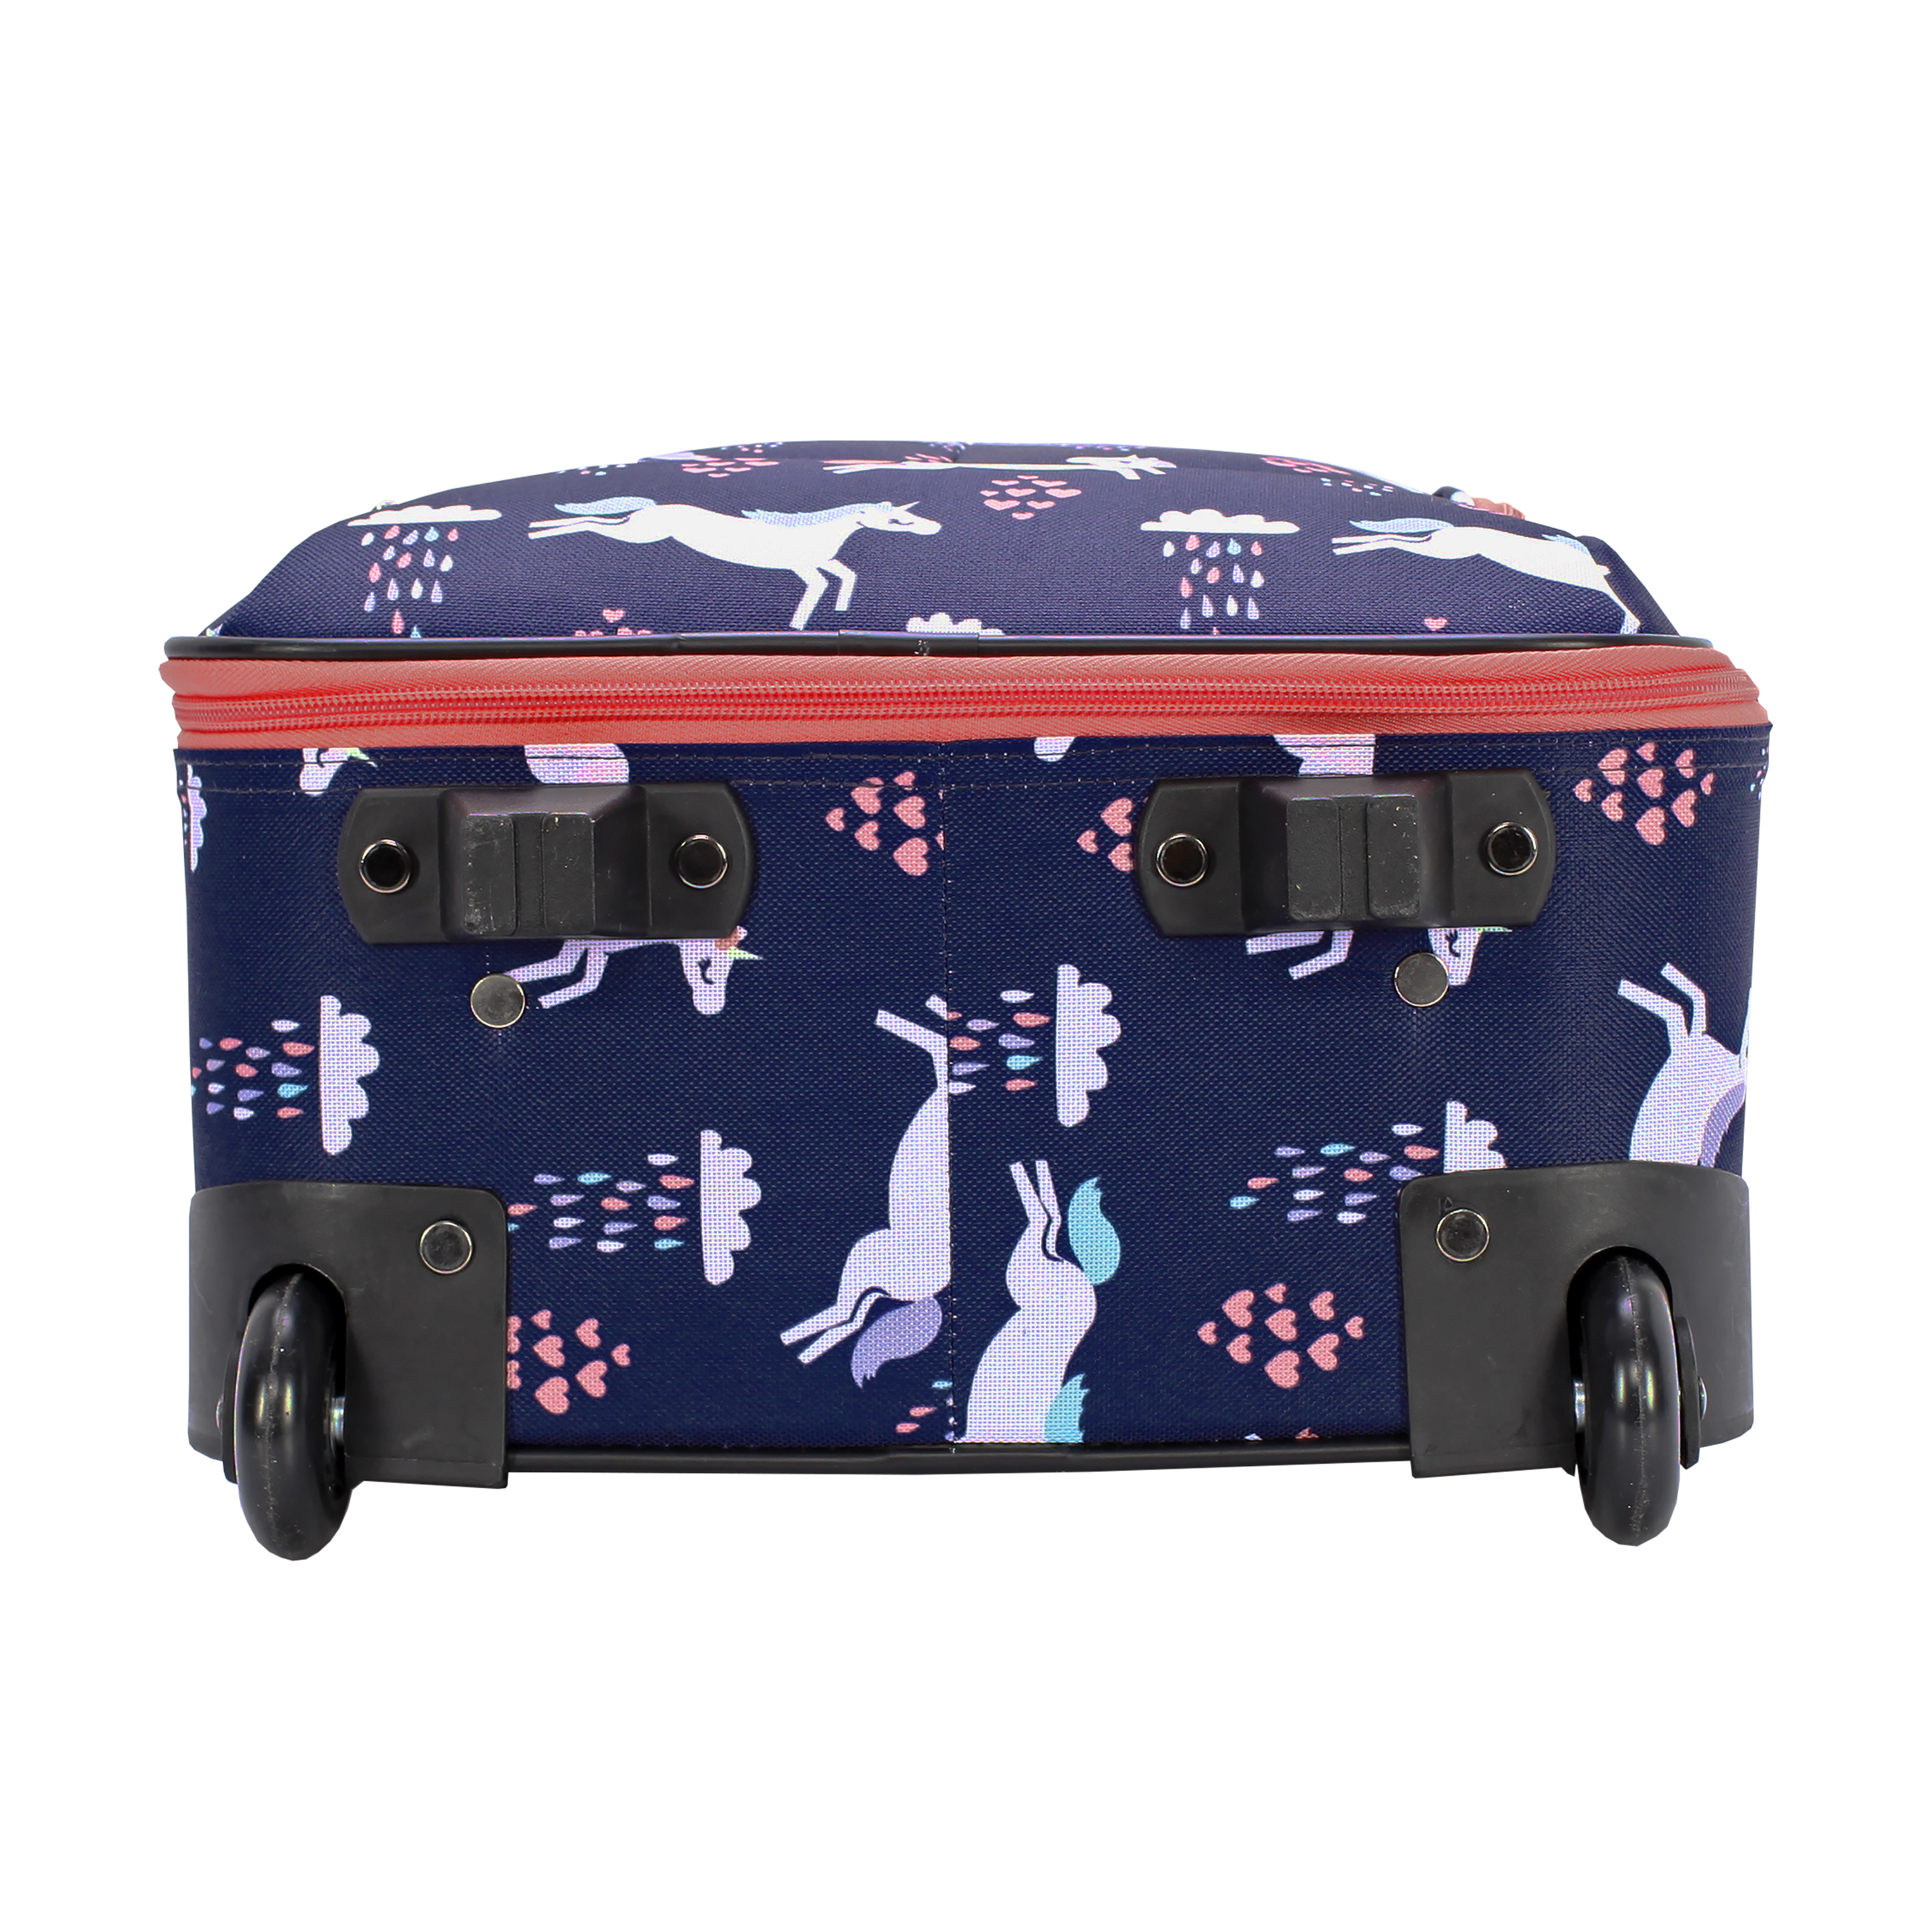 Protege 18" Kids Pilot Case Carry-on Luggage Suitcase, Unicorn - image 3 of 9